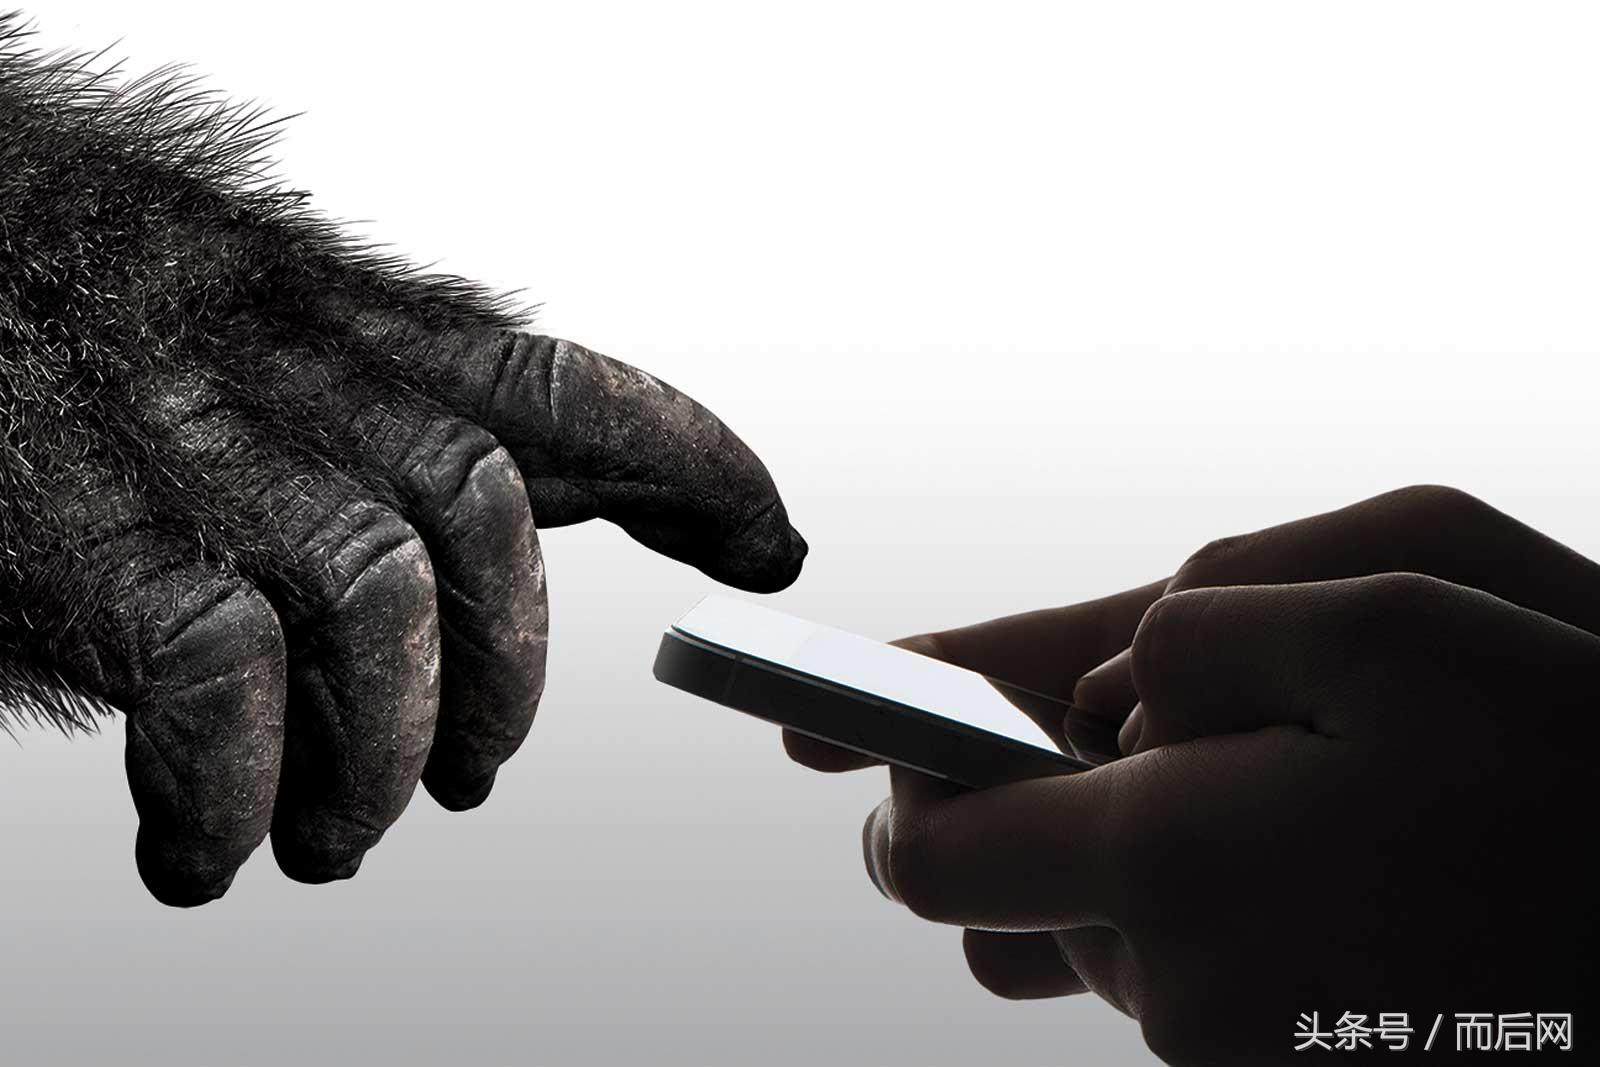 第六代大猩猩玻璃要给手机屏二倍的维护